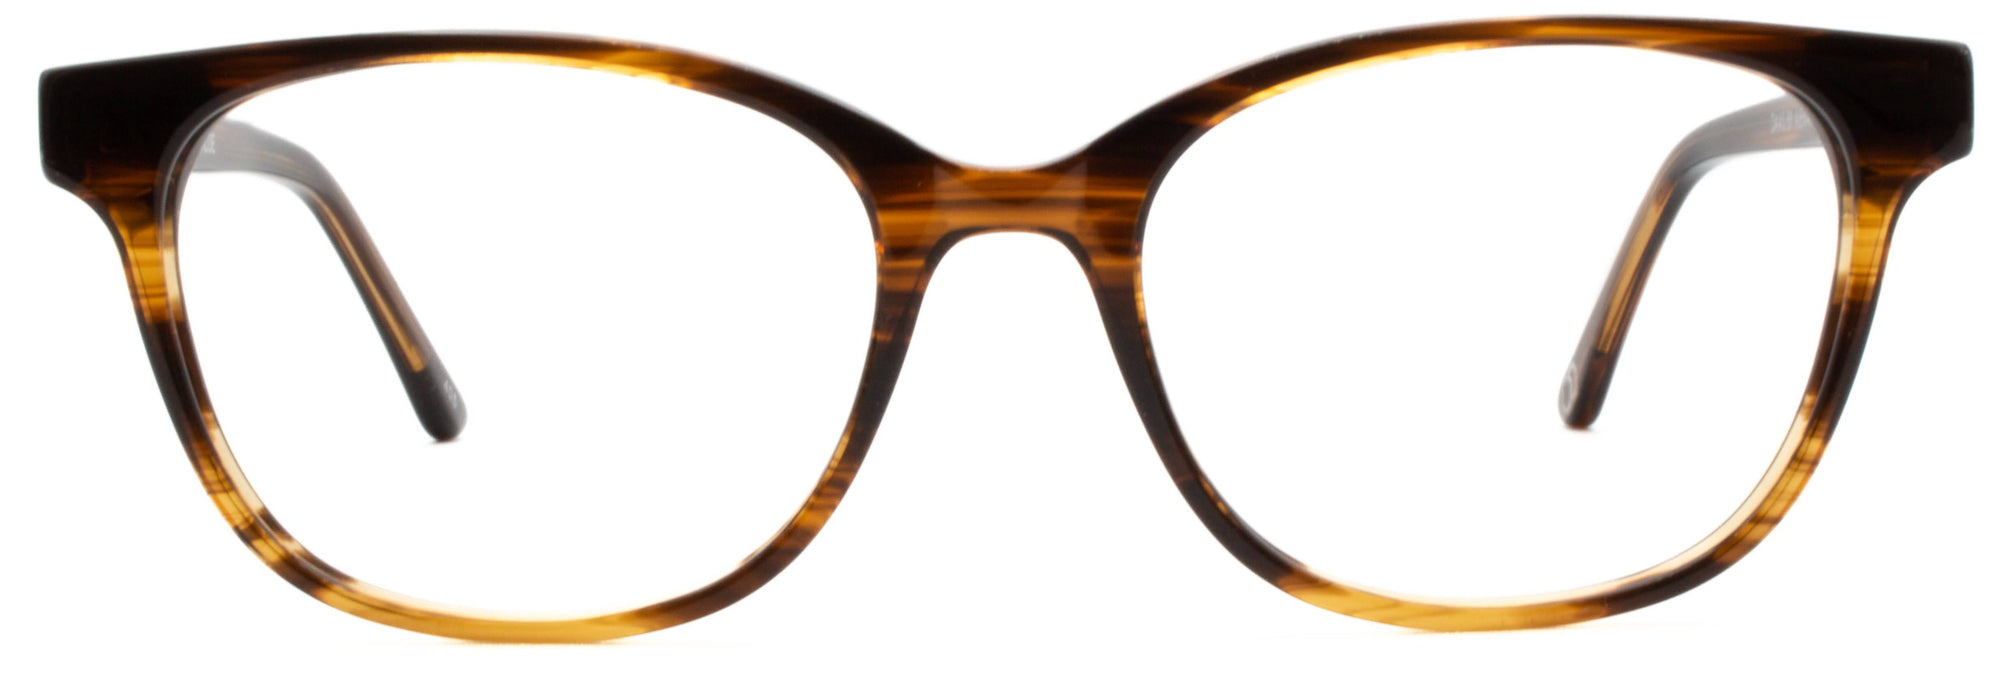 Alexander Daas - Chloe Eyeglasses - Straited Tortoise - Front View